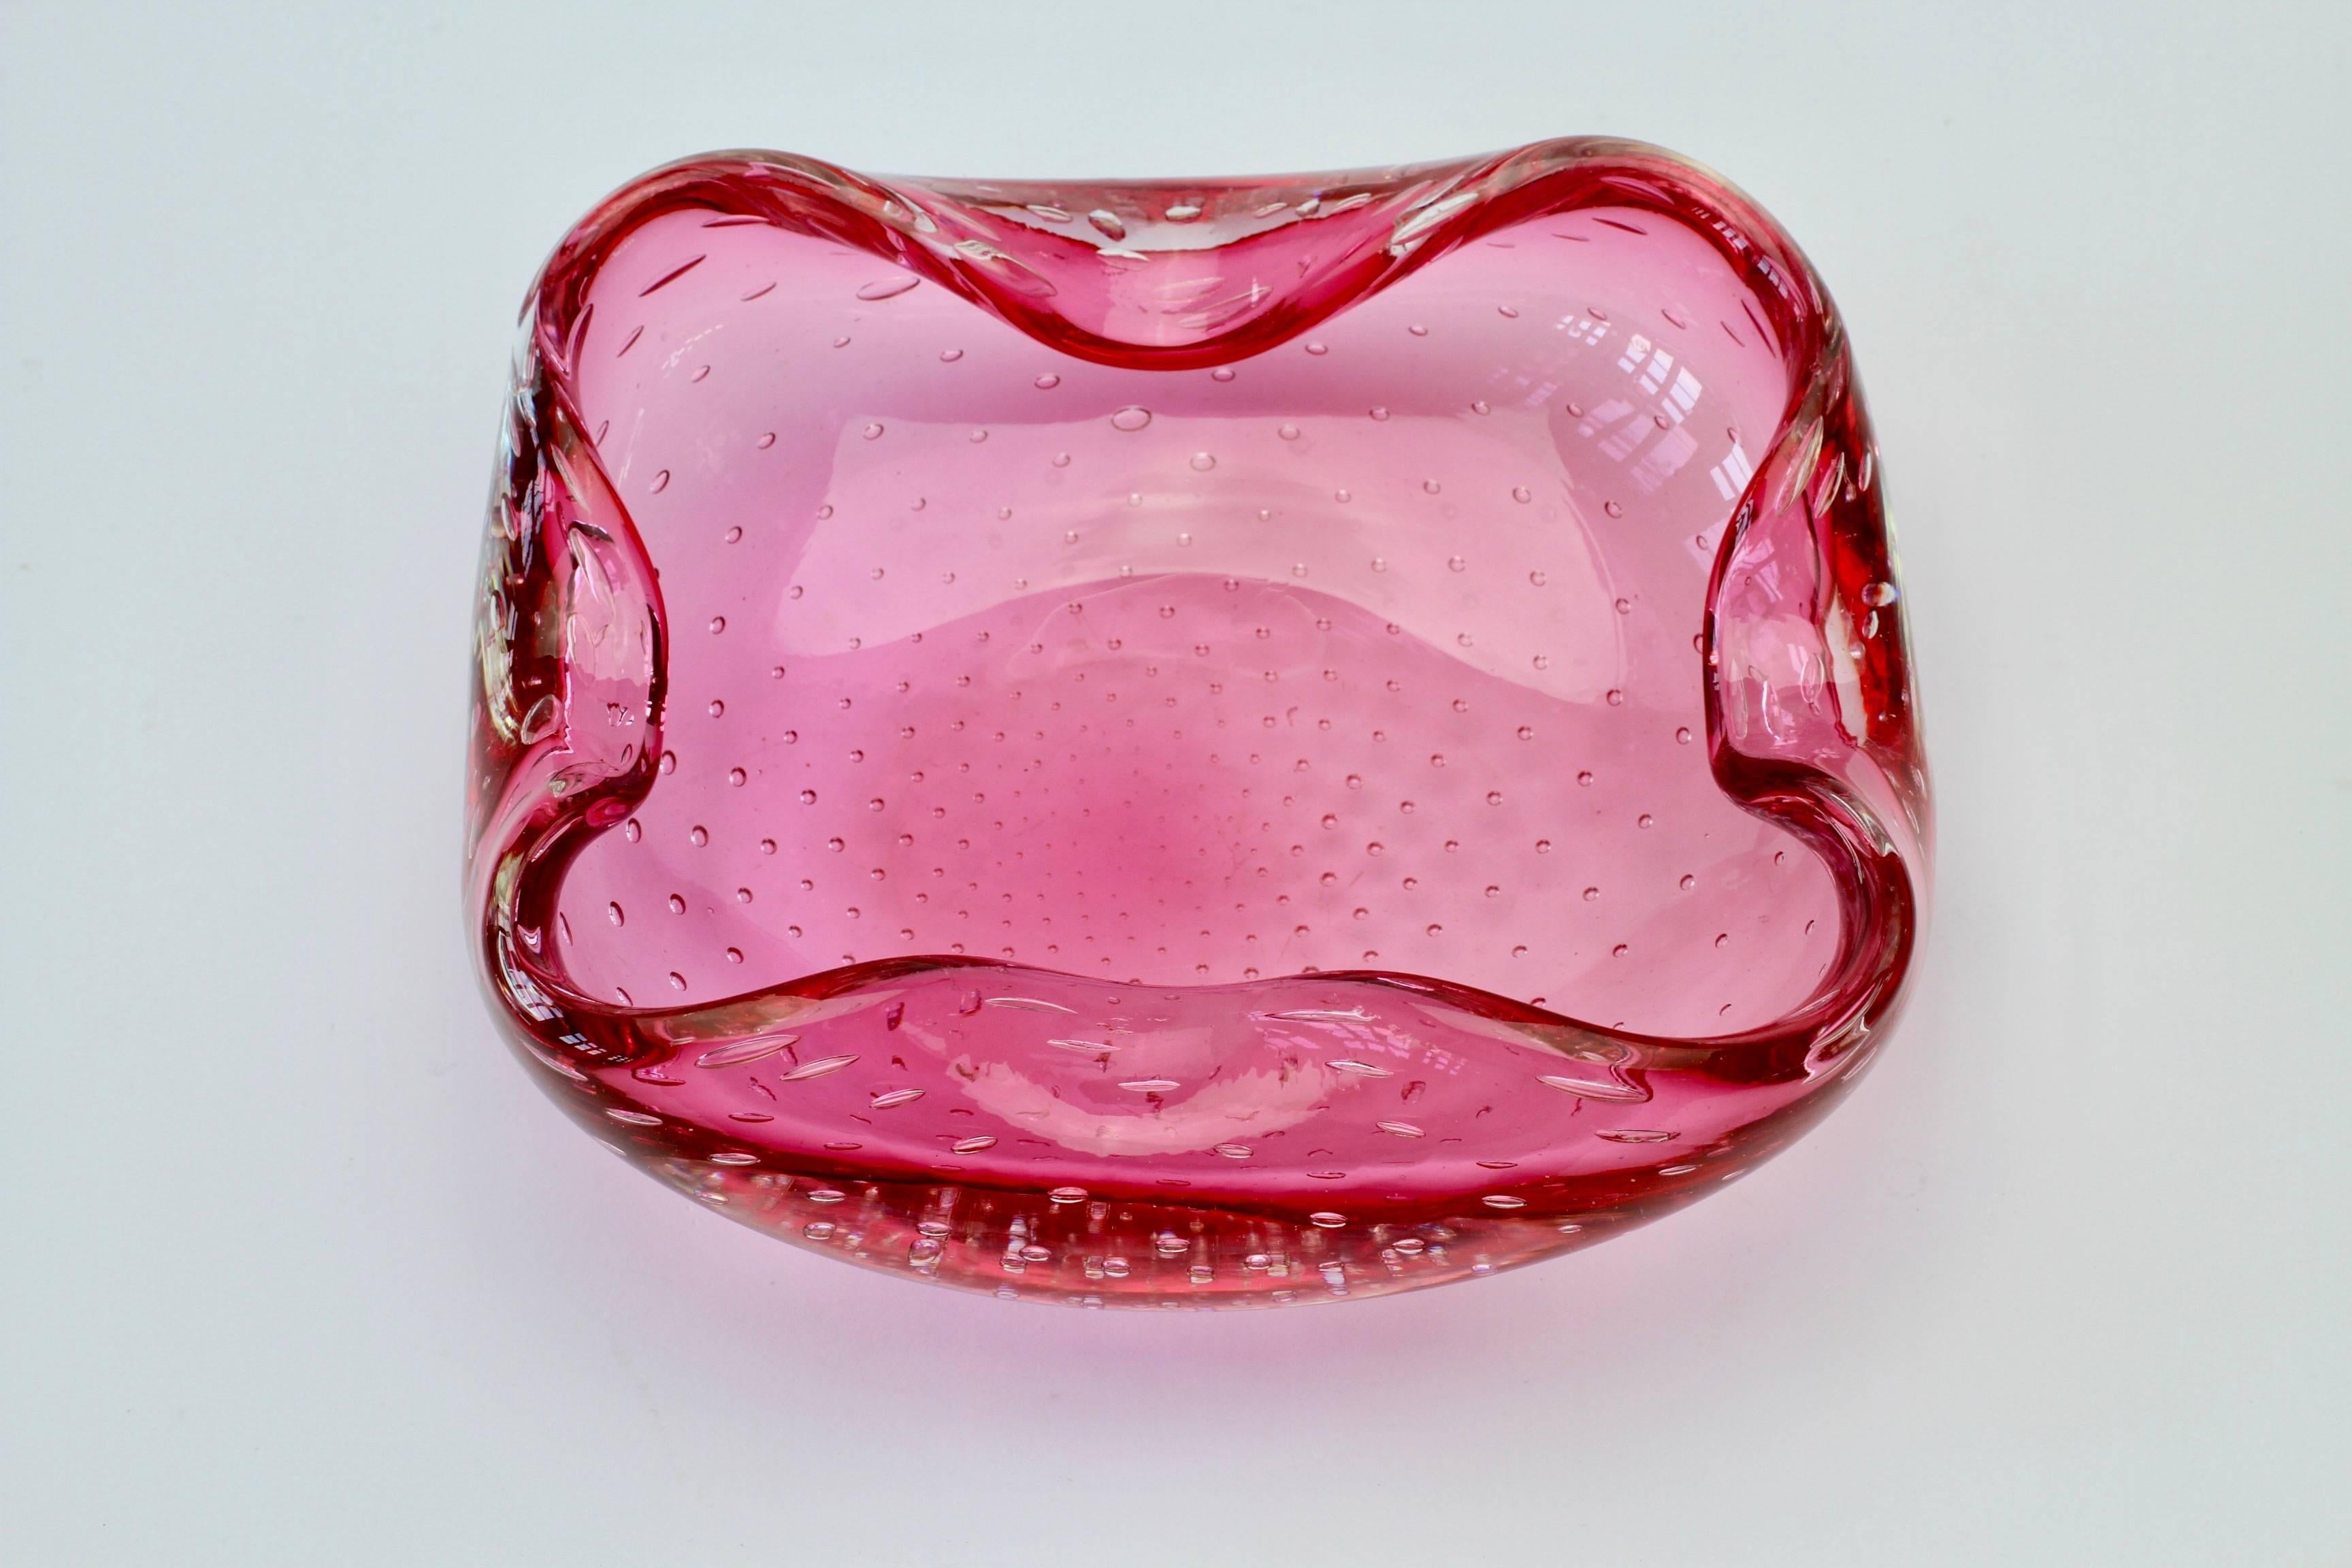 Eine schöne große rechteckige biomorph geformte rosa Glas 'Bullicante' (kontrollierte Blase) Schüssel oder Aschenbecher mit gefalteten Rändern. Im Stil des Murano-Glasdesigners Carlo Scarpa für Venini, um 1950. Ein sehr schönes Mittelstück.